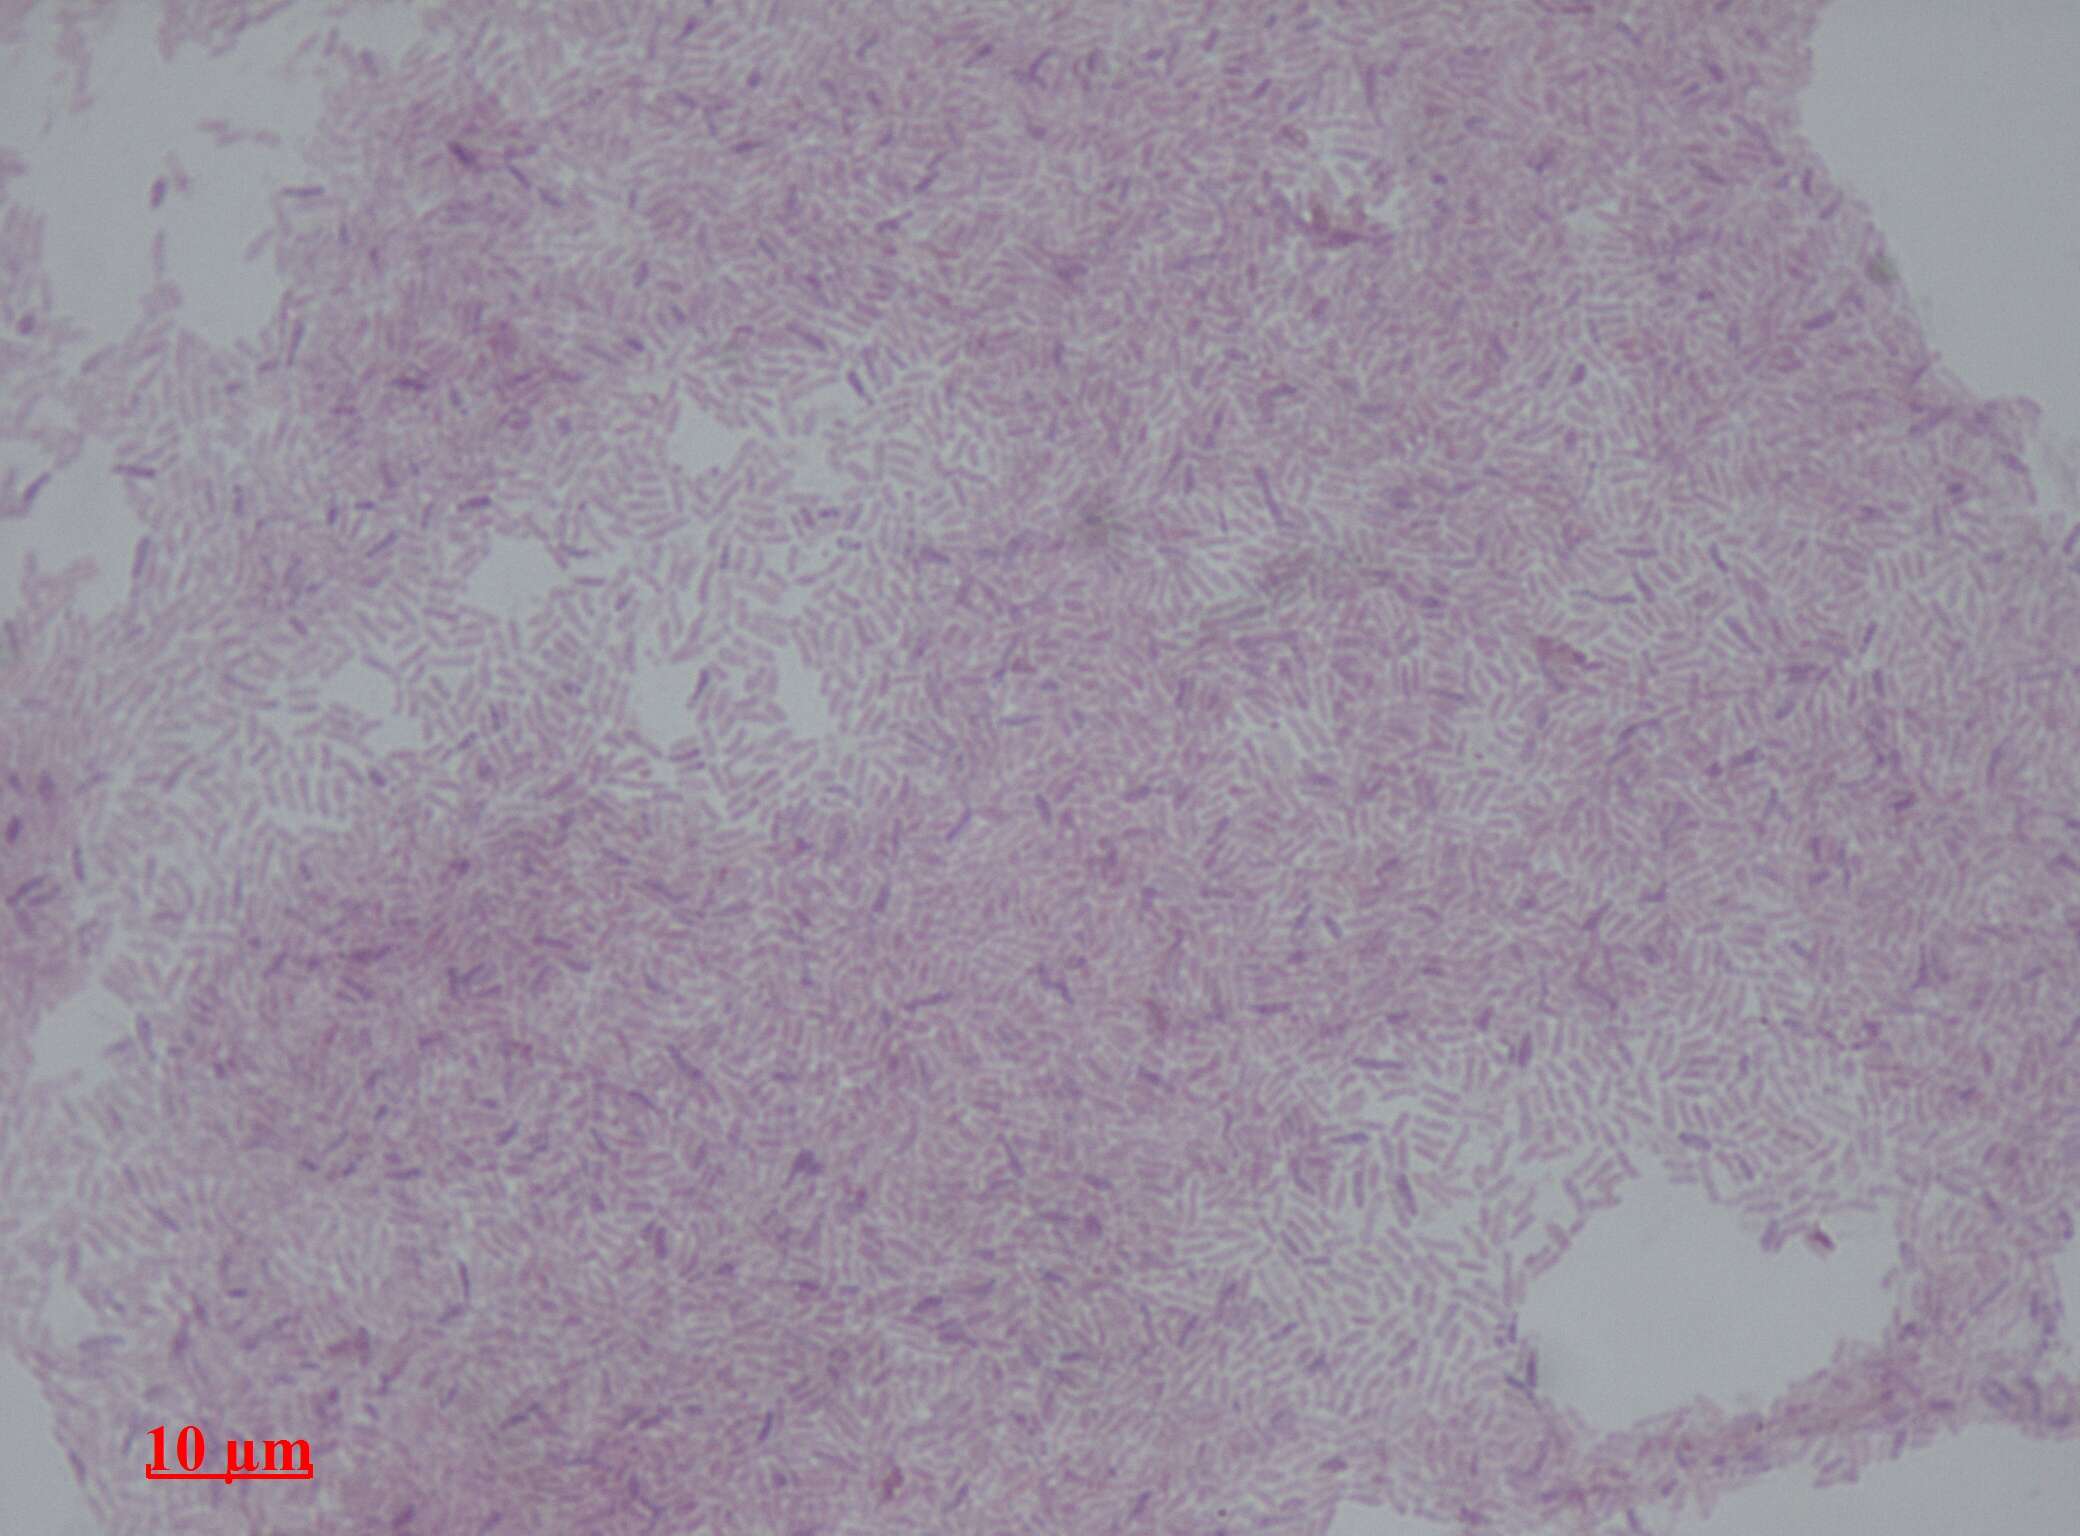 Image of Methylobacterium fujisawaense